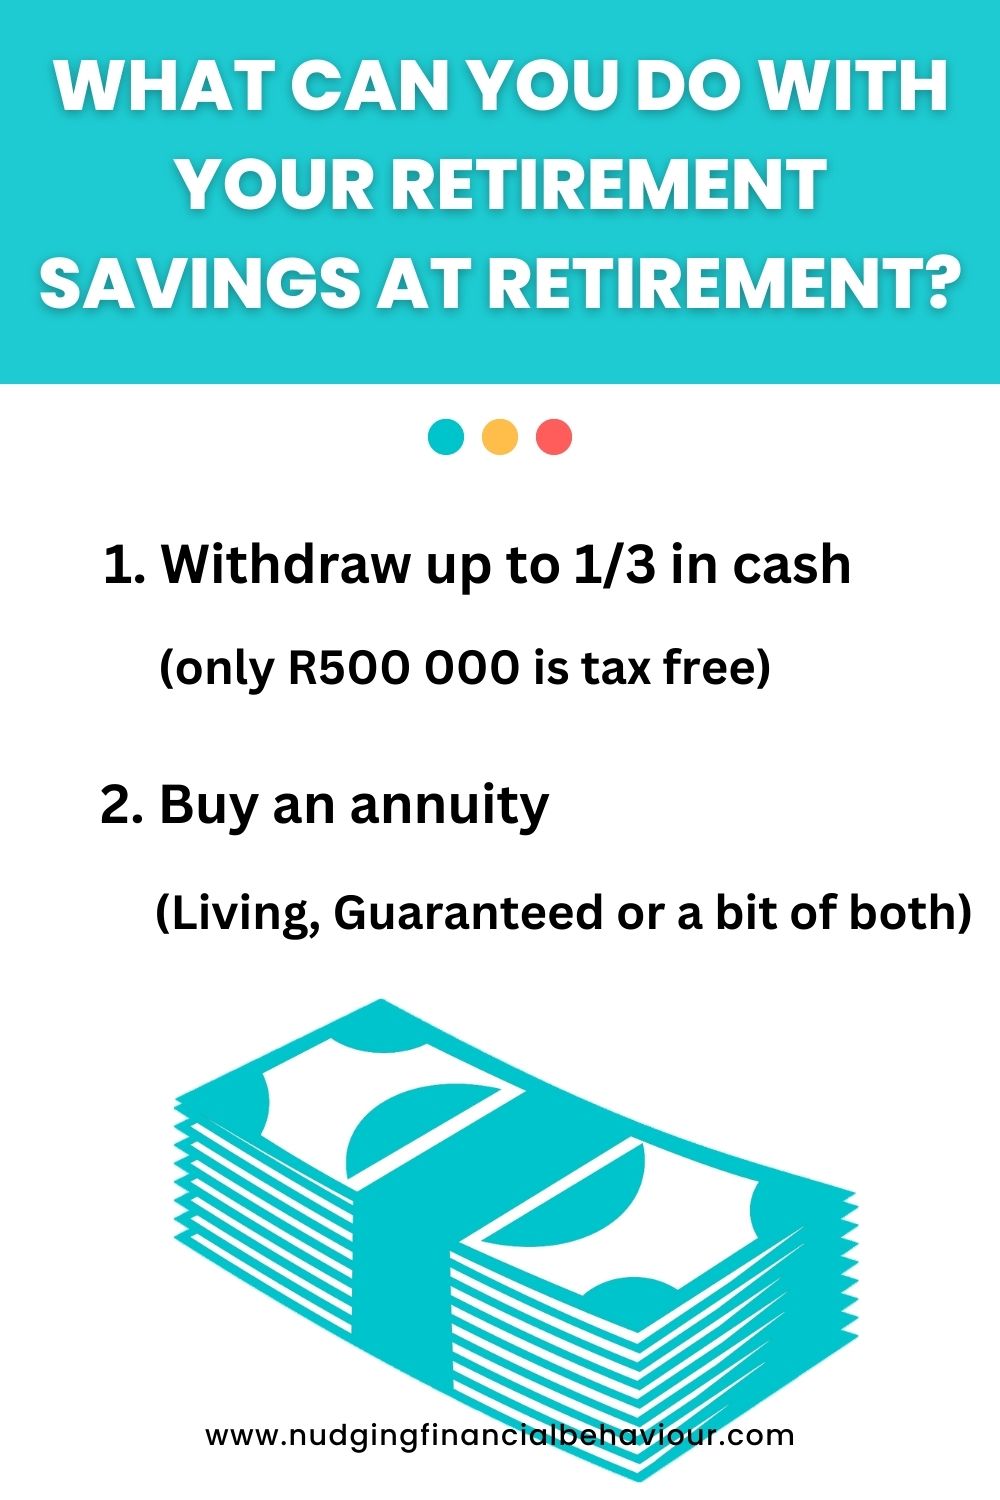 Retirement savings at retirement